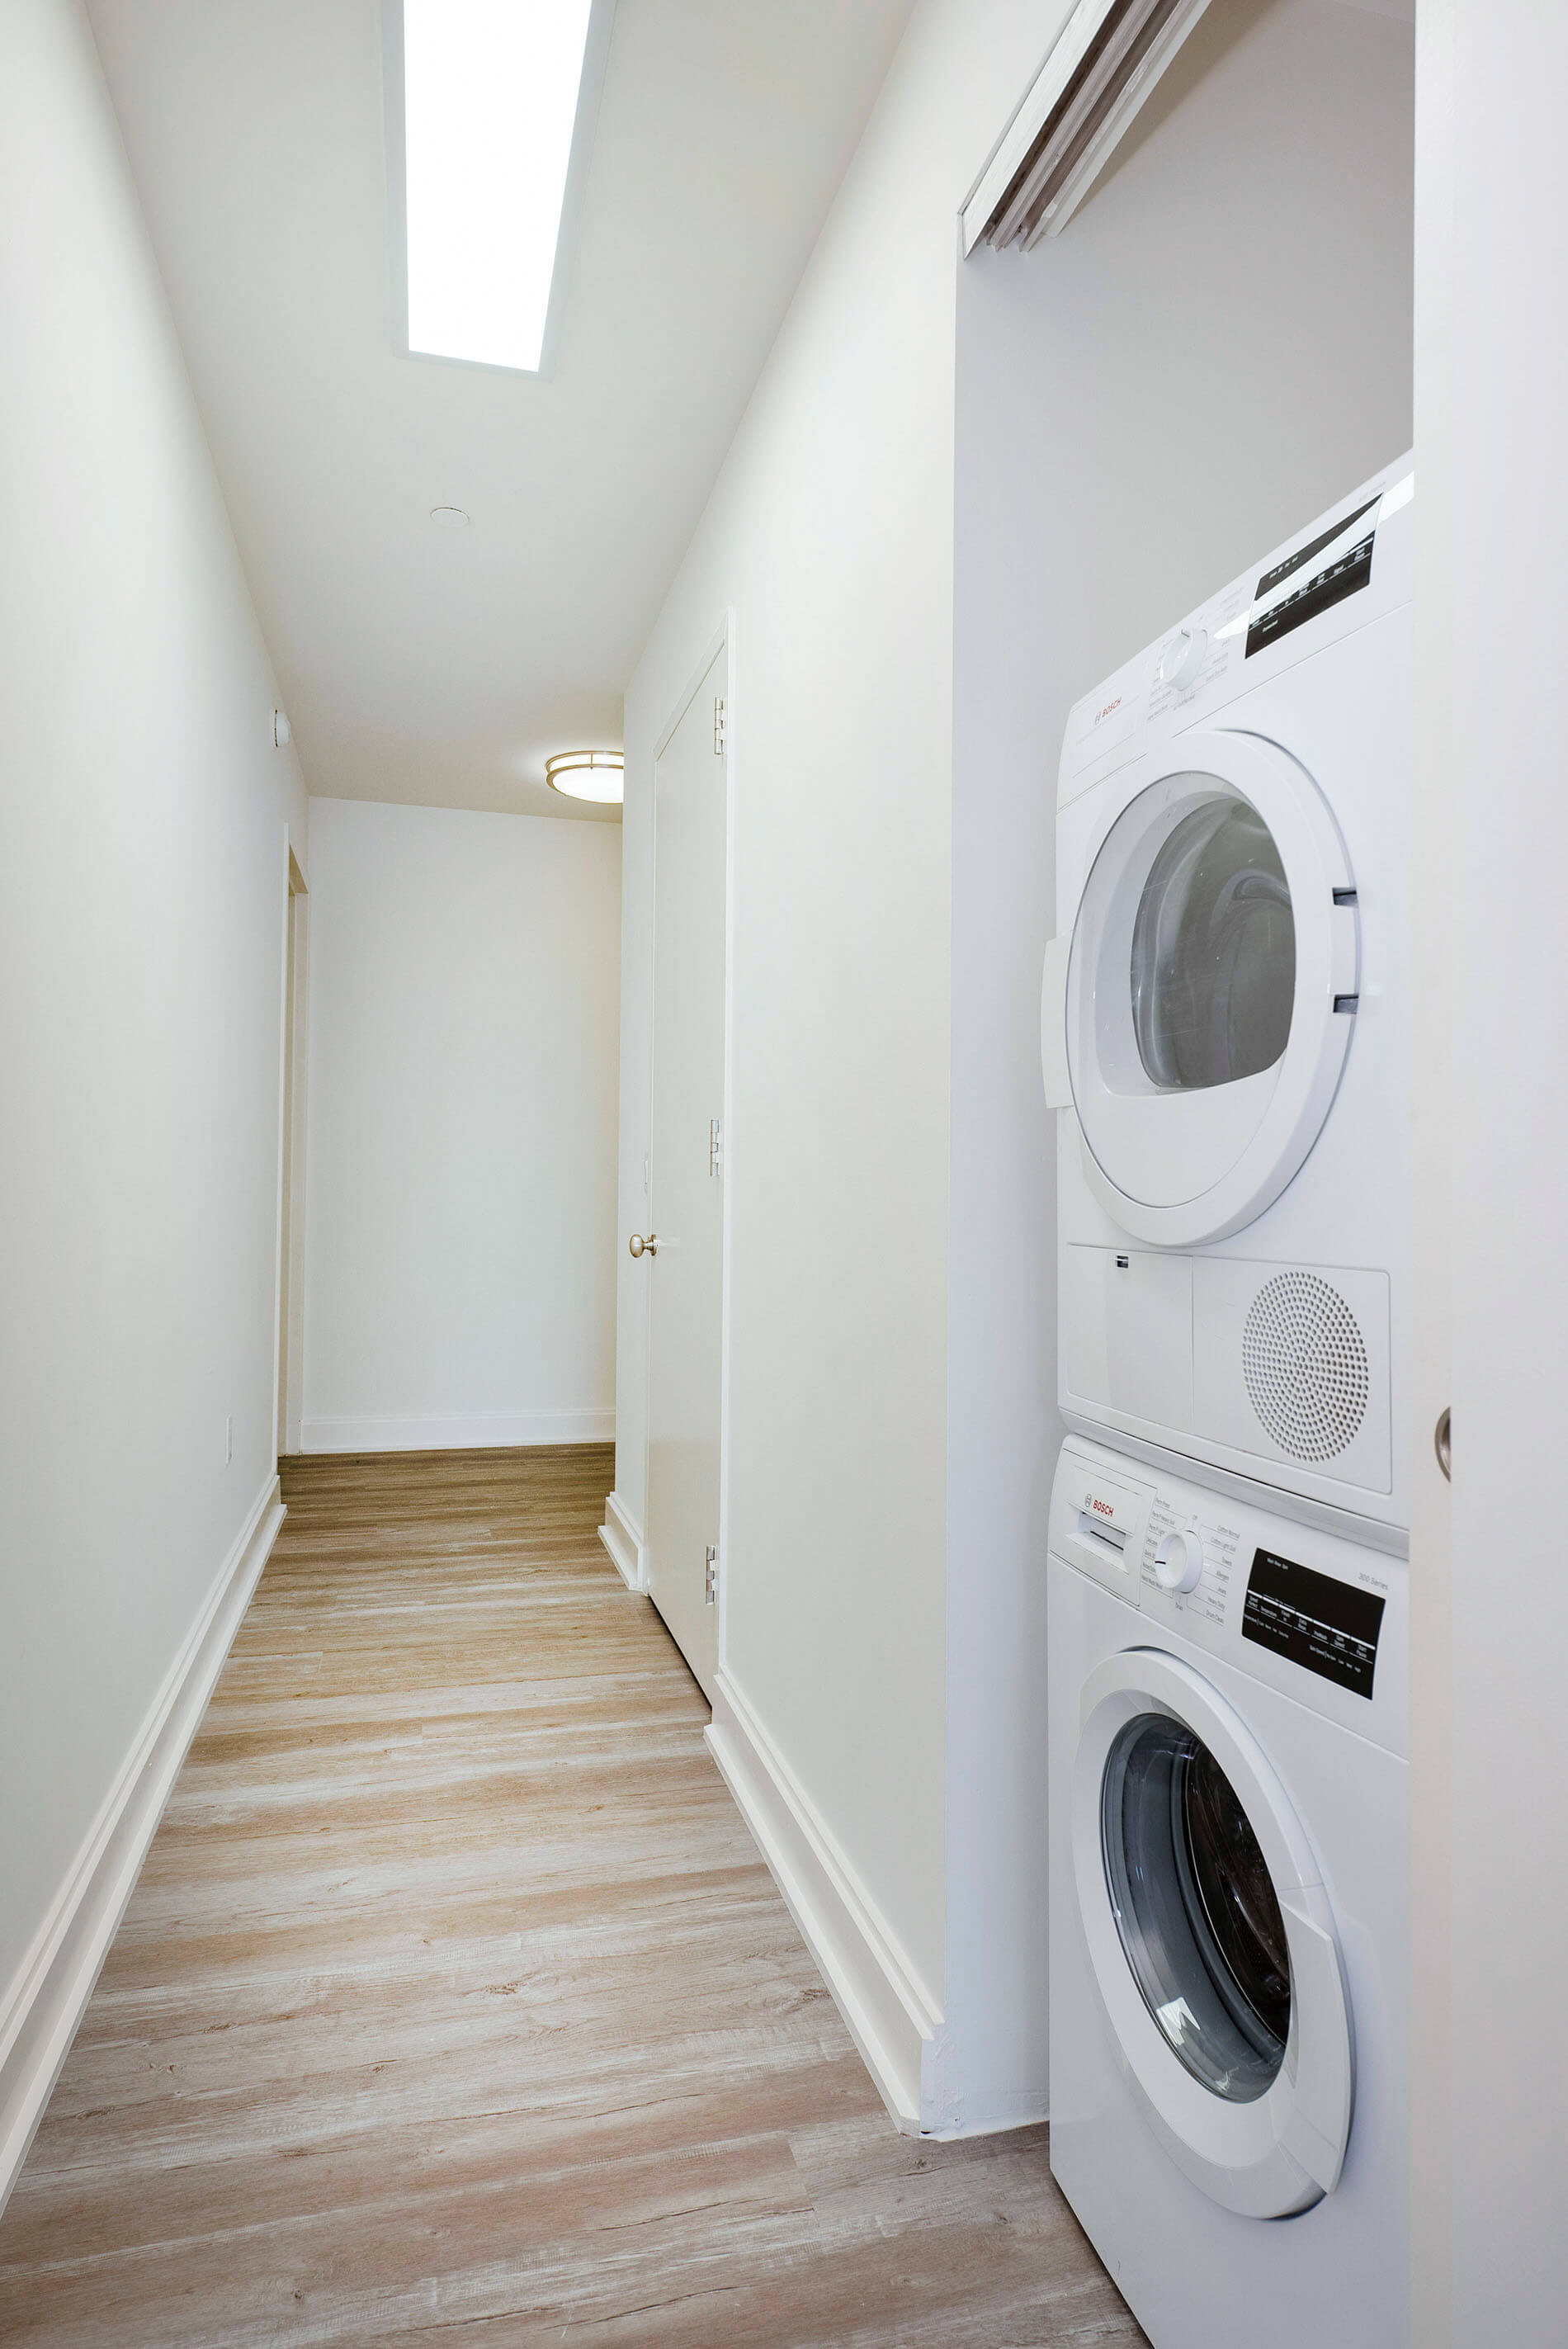 10 Hanover apartment laundry